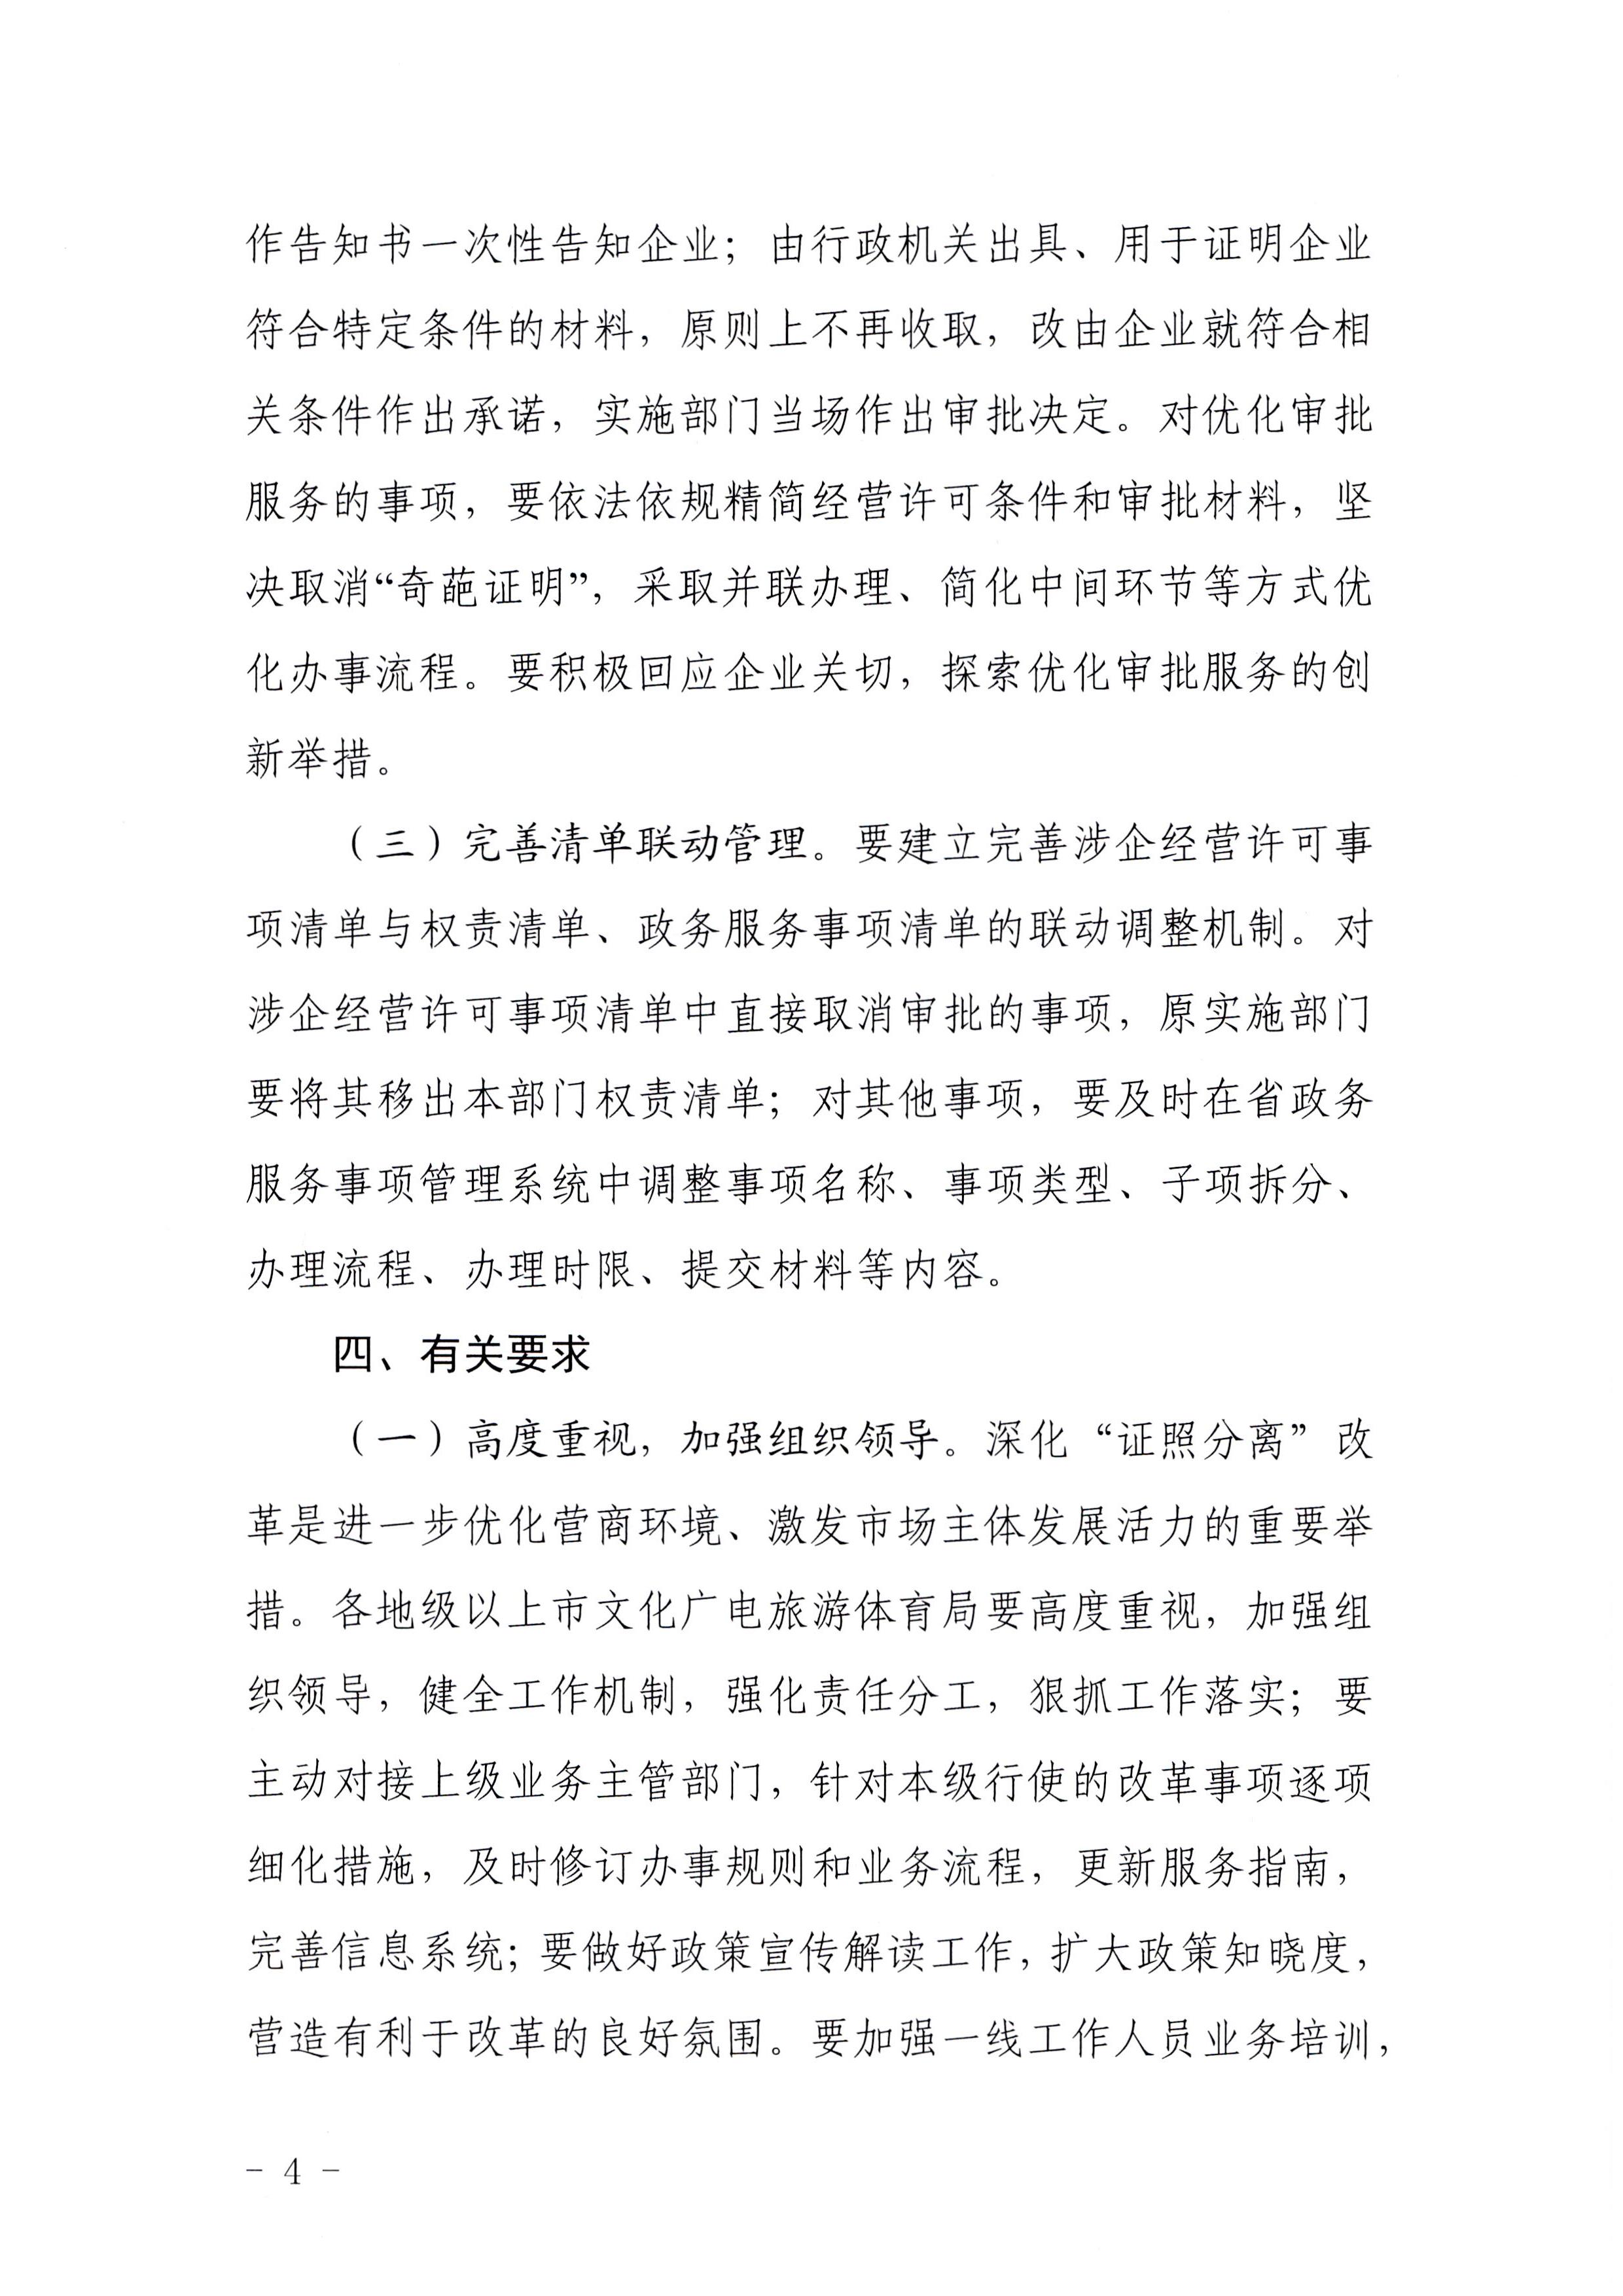 广东省文化和旅游厅印发证照分离改革实施方案的通知_页面_04.jpg